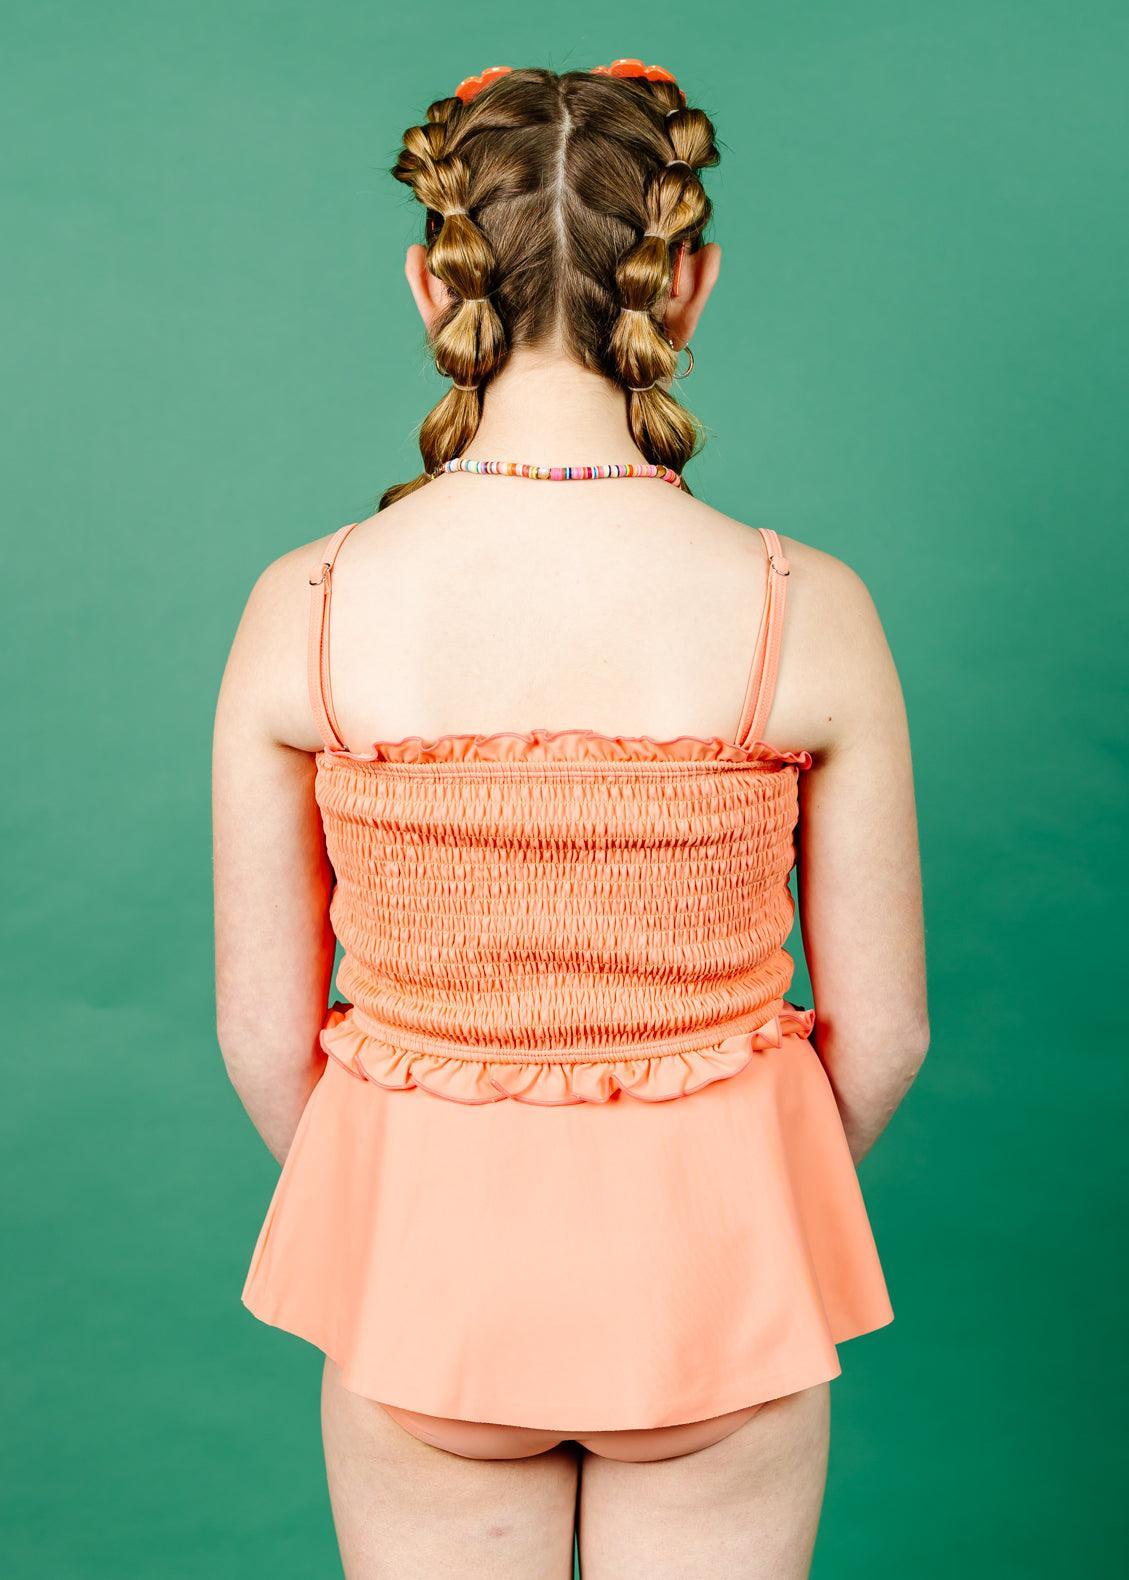 Teen Girl High-Waisted Swimsuit Bottoms - Skirt - Melon